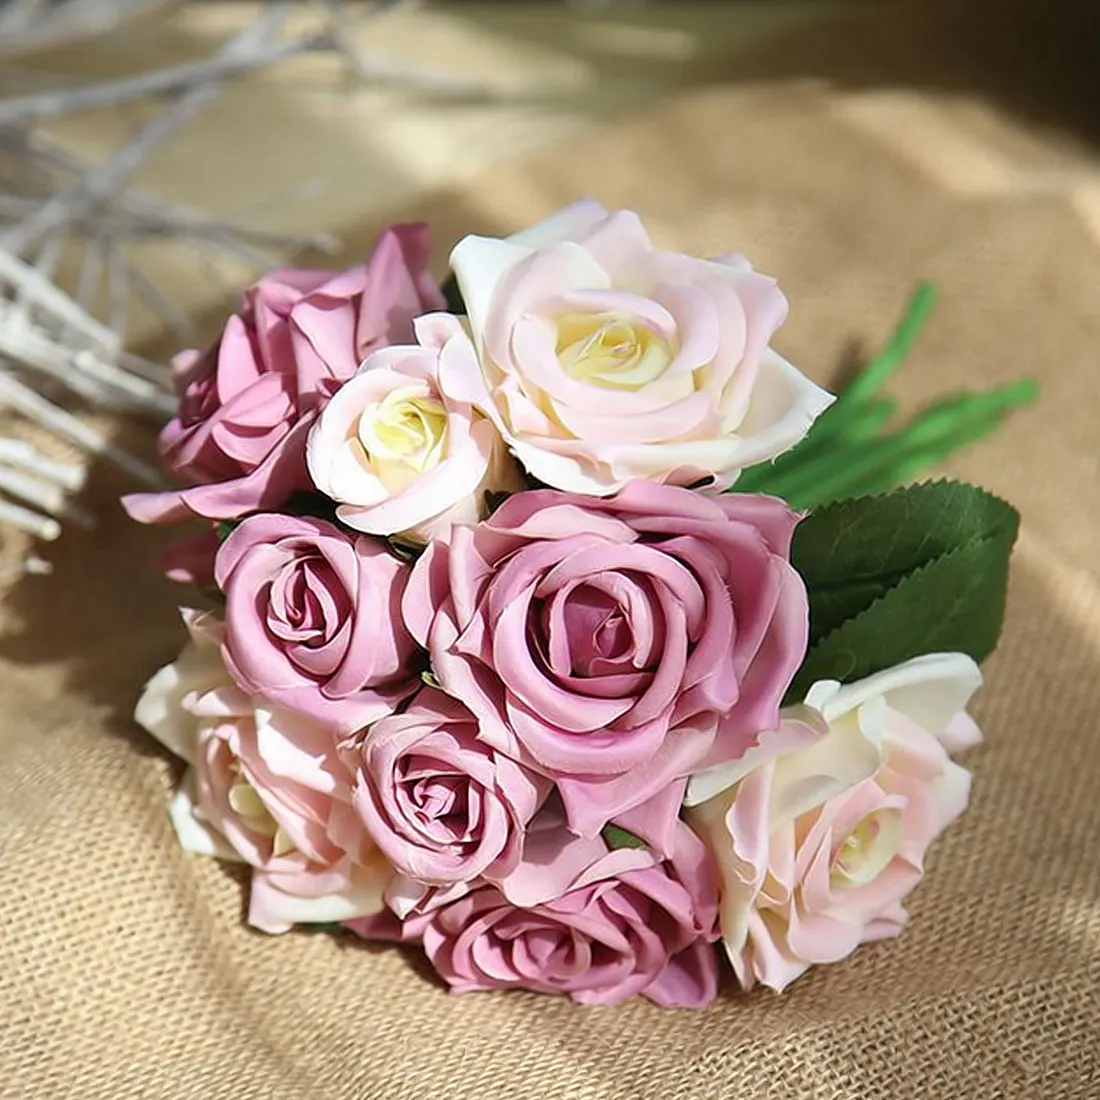 9 шт. Искусственные цветы розы Свадебное Оформление букета тайская Королевская роза высококлассные искусственные шелковые цветы розы домашний декор - Цвет: White purple